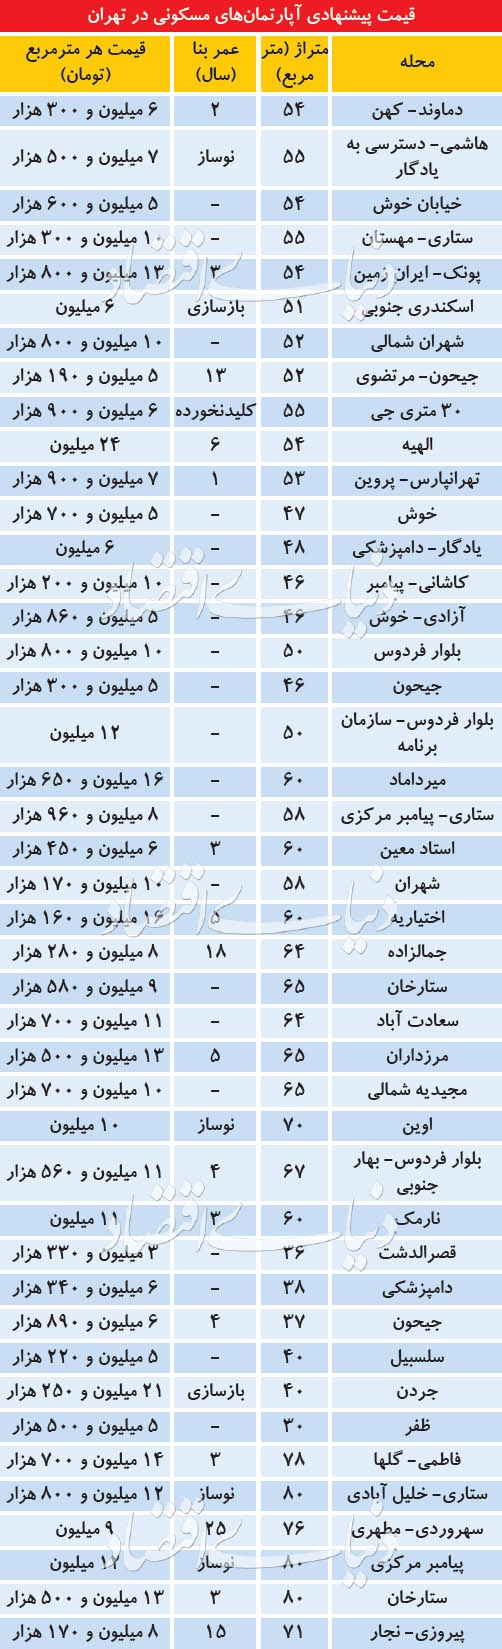 قیمت آپارتمانهای نقلی در تهران/ قیمتهایی بالاتر از حد انتظار